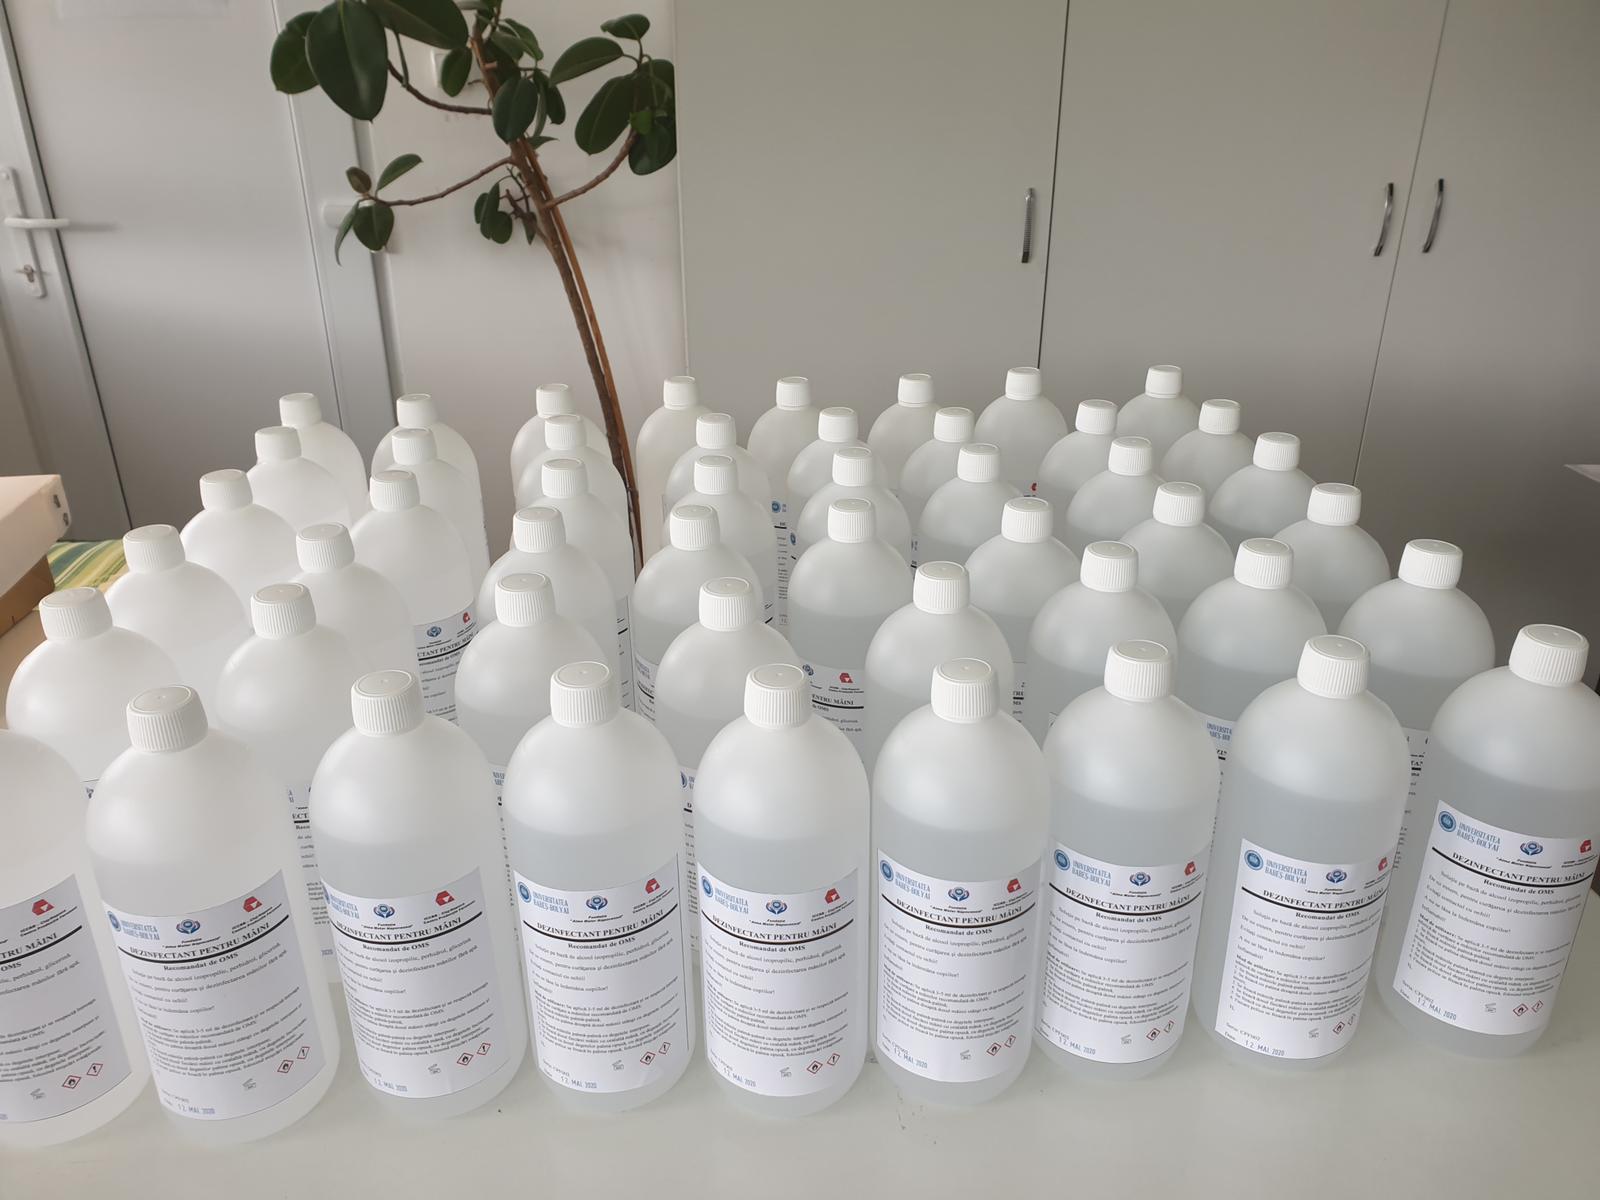 Fundația UBB și Centrul de Producție Feromoni au preparat primul lot de dezinfectanți pentu spitalele clujene